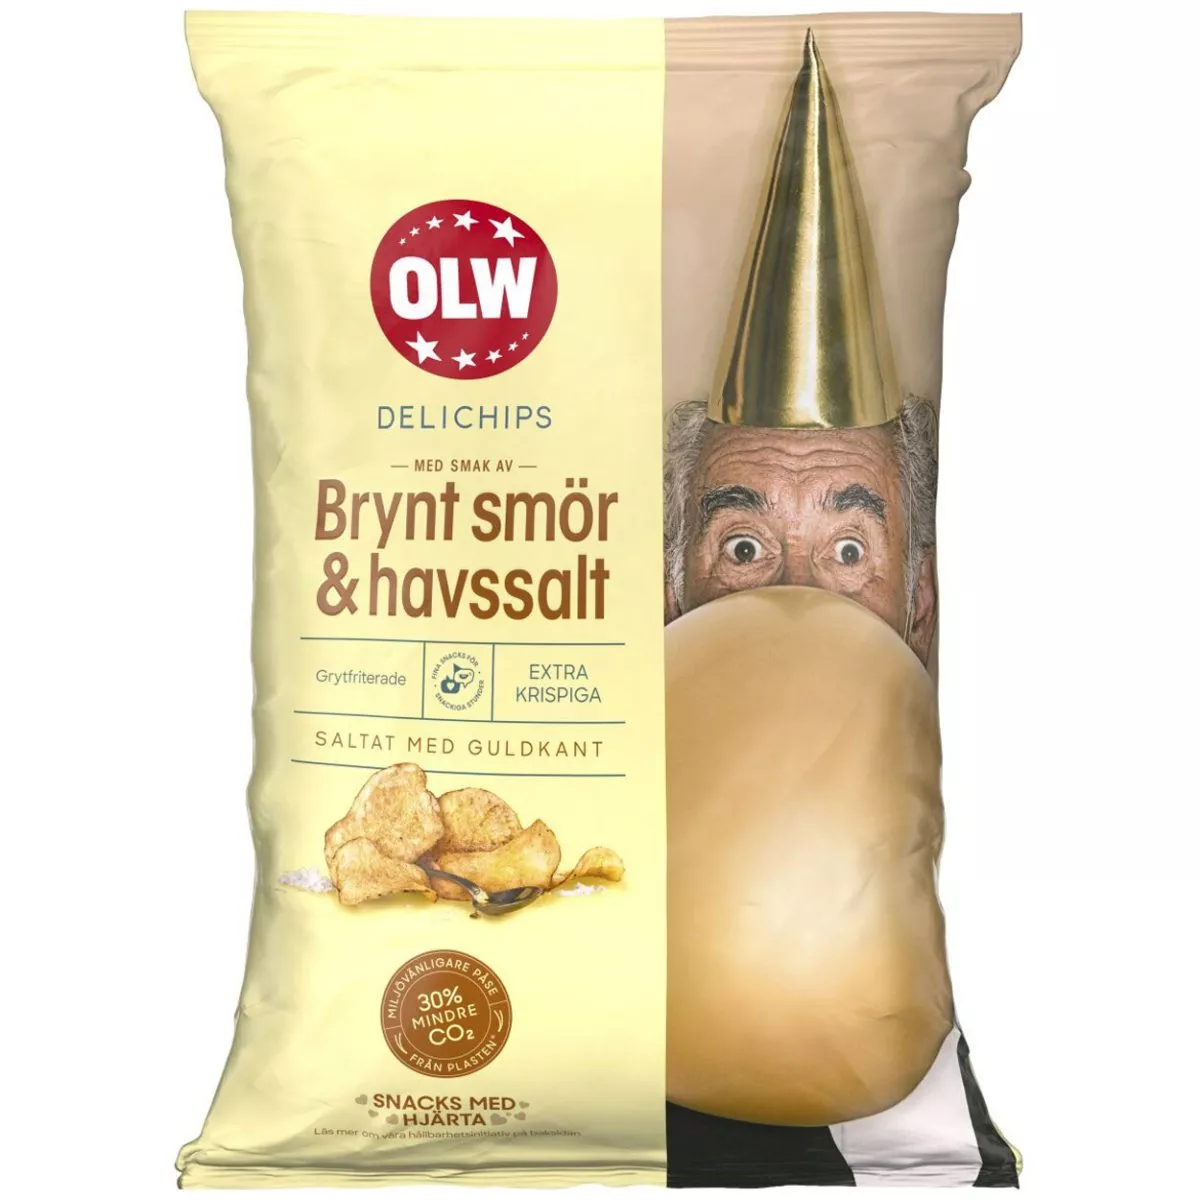 OLW Delichips Brynt smör & Havssalt - Butter und Meersalz (150g) 1